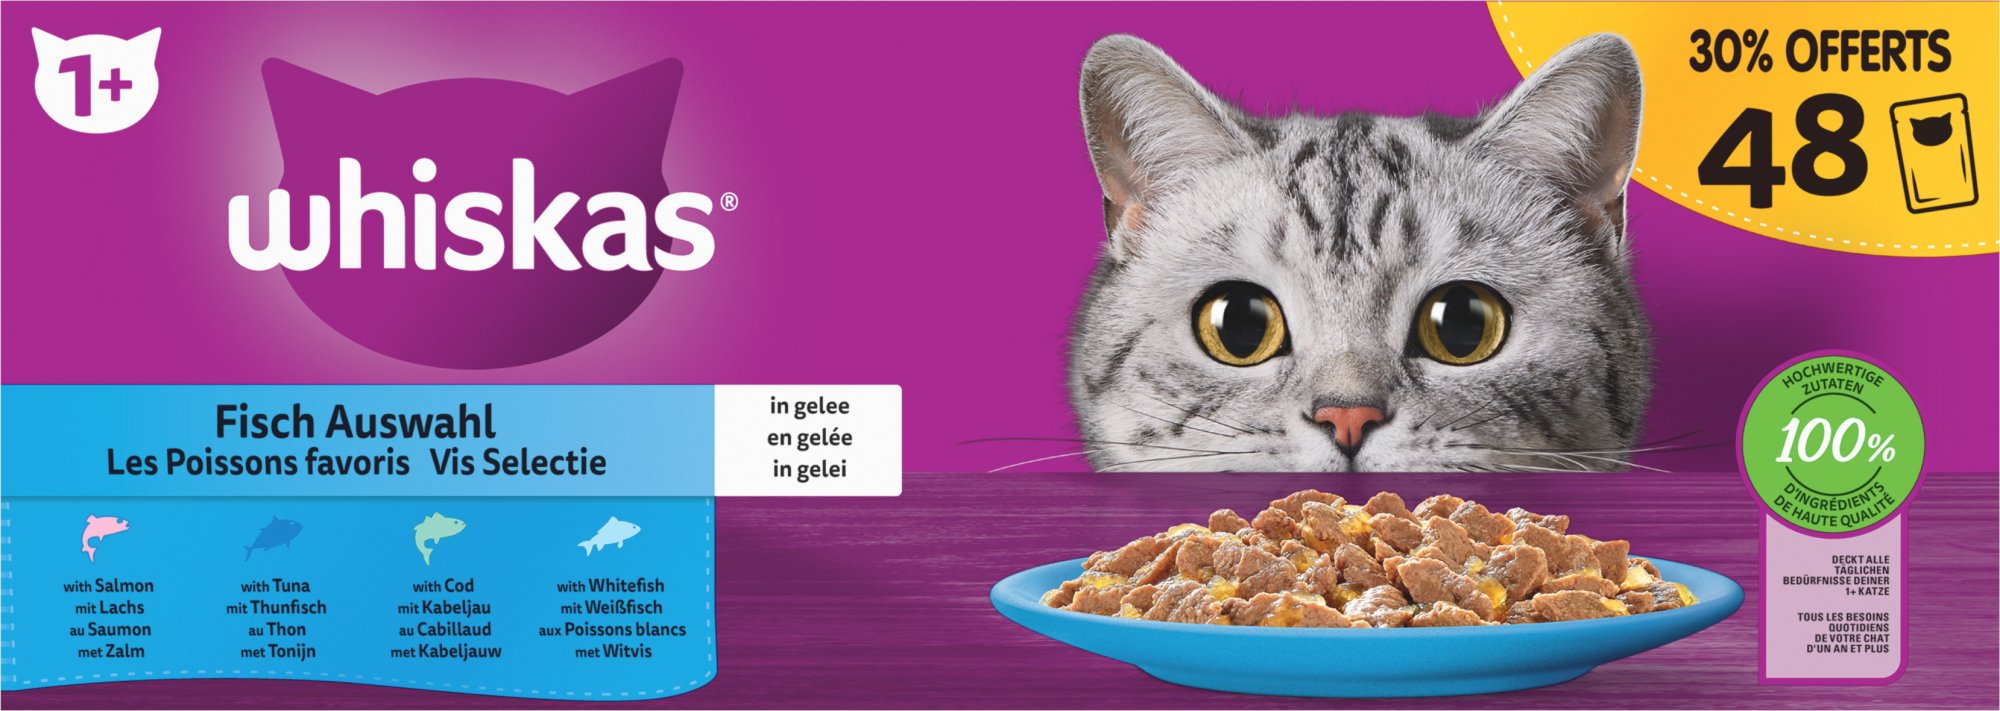 MEGA Packung mit 48 Pasteten, davon 30% GRATIS WHISKAS - Ausgewählte Fleischsorten in Sauce und Fisch in Gelee für Katzen